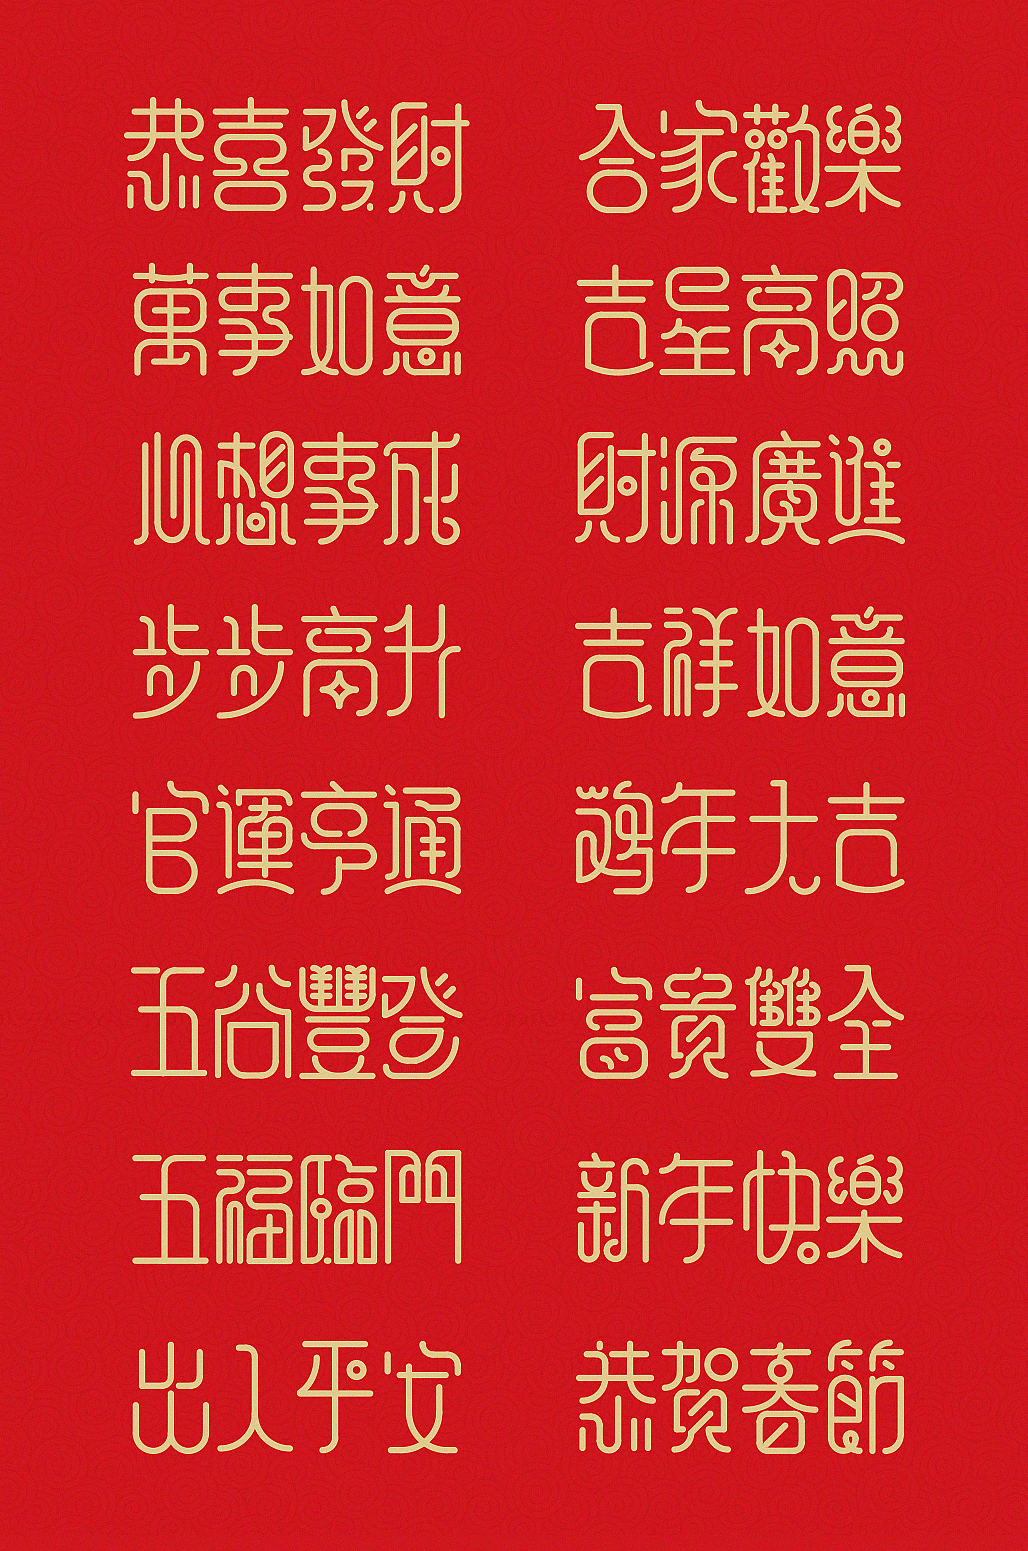 新年祝福语字体设计 2017